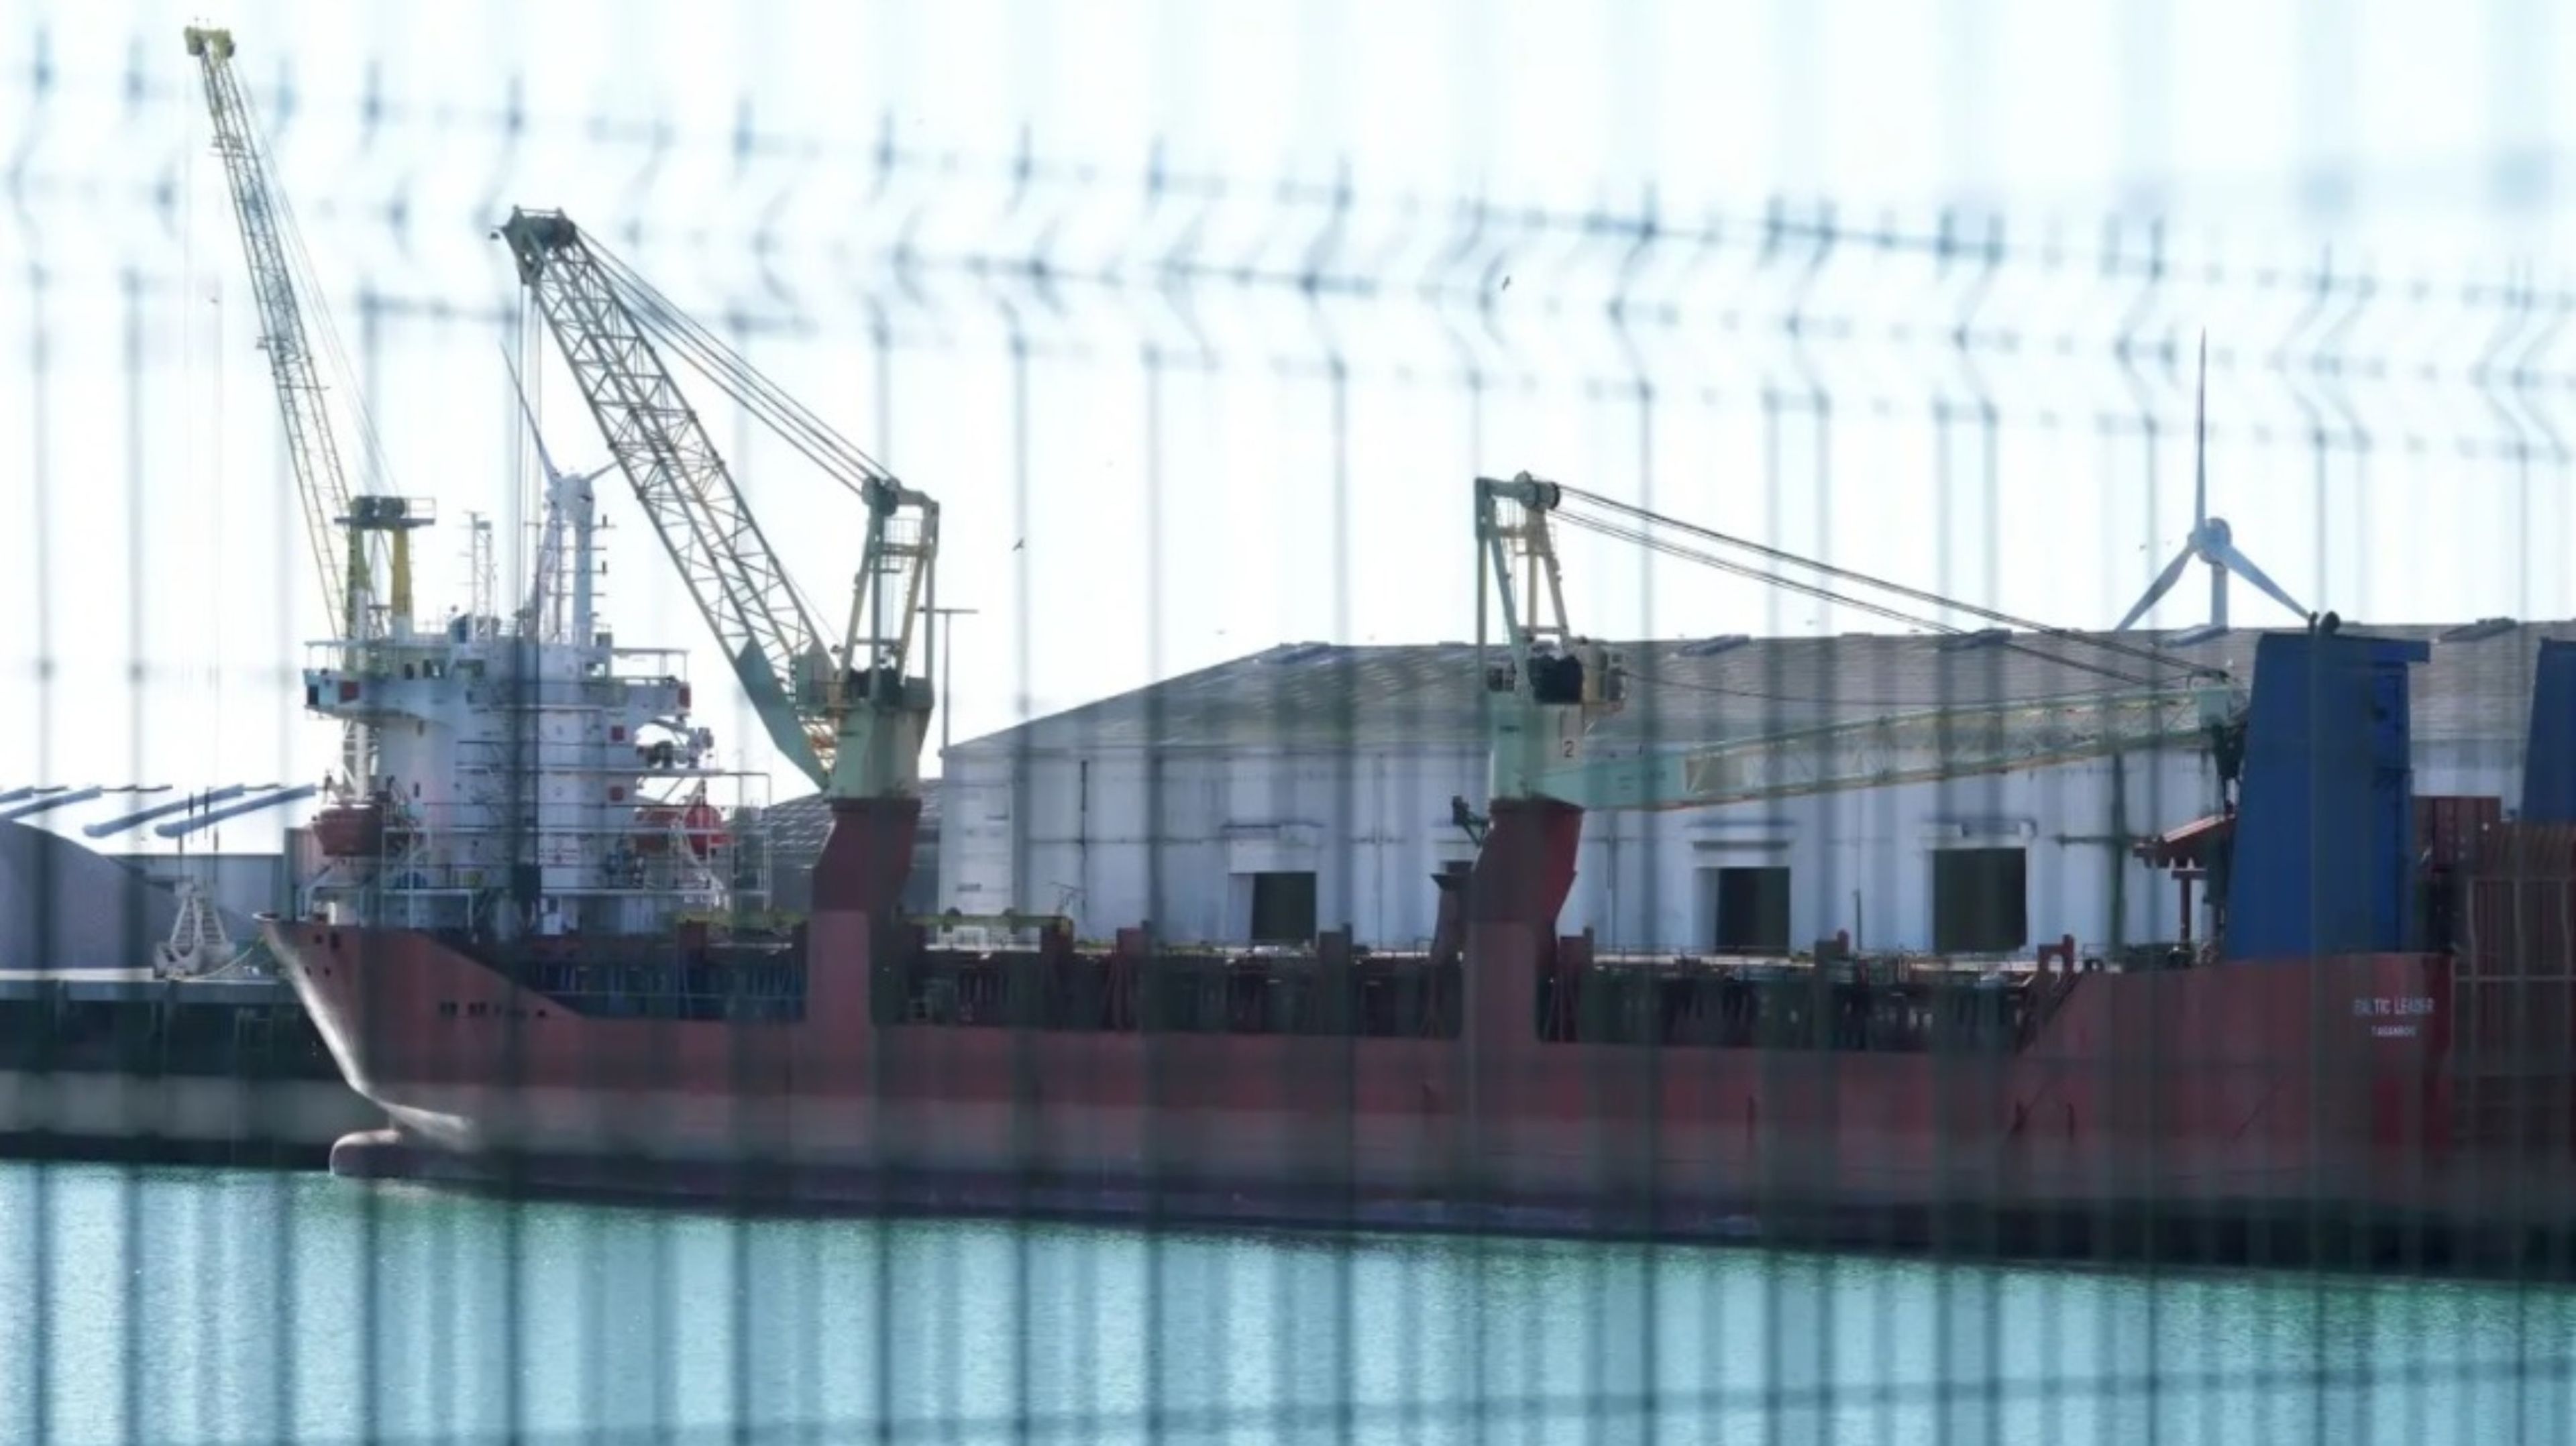 Tras las sanciones, las autoridades francesas interceptaron un barco comercial de propiedad rusa en el estrecho de Pas-de-Calais.